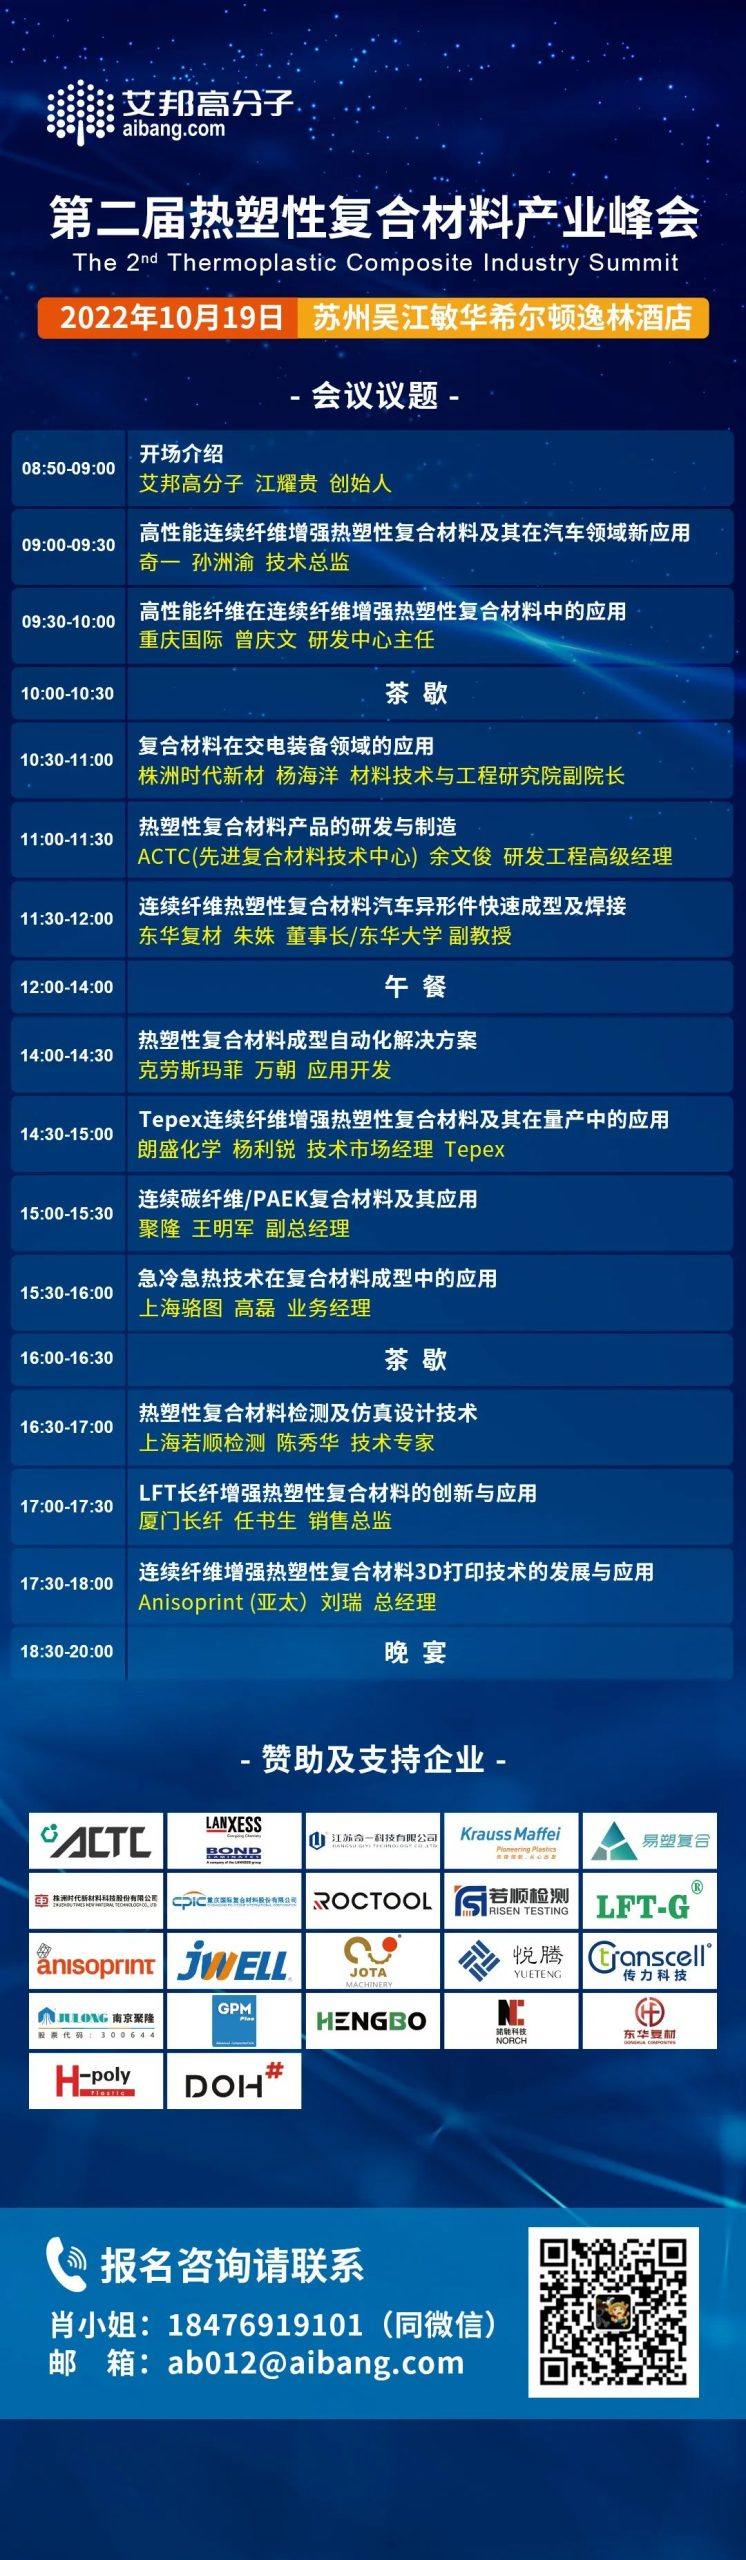 南京聚隆将出席第二届热塑性复合材料产业峰会并做主题演讲